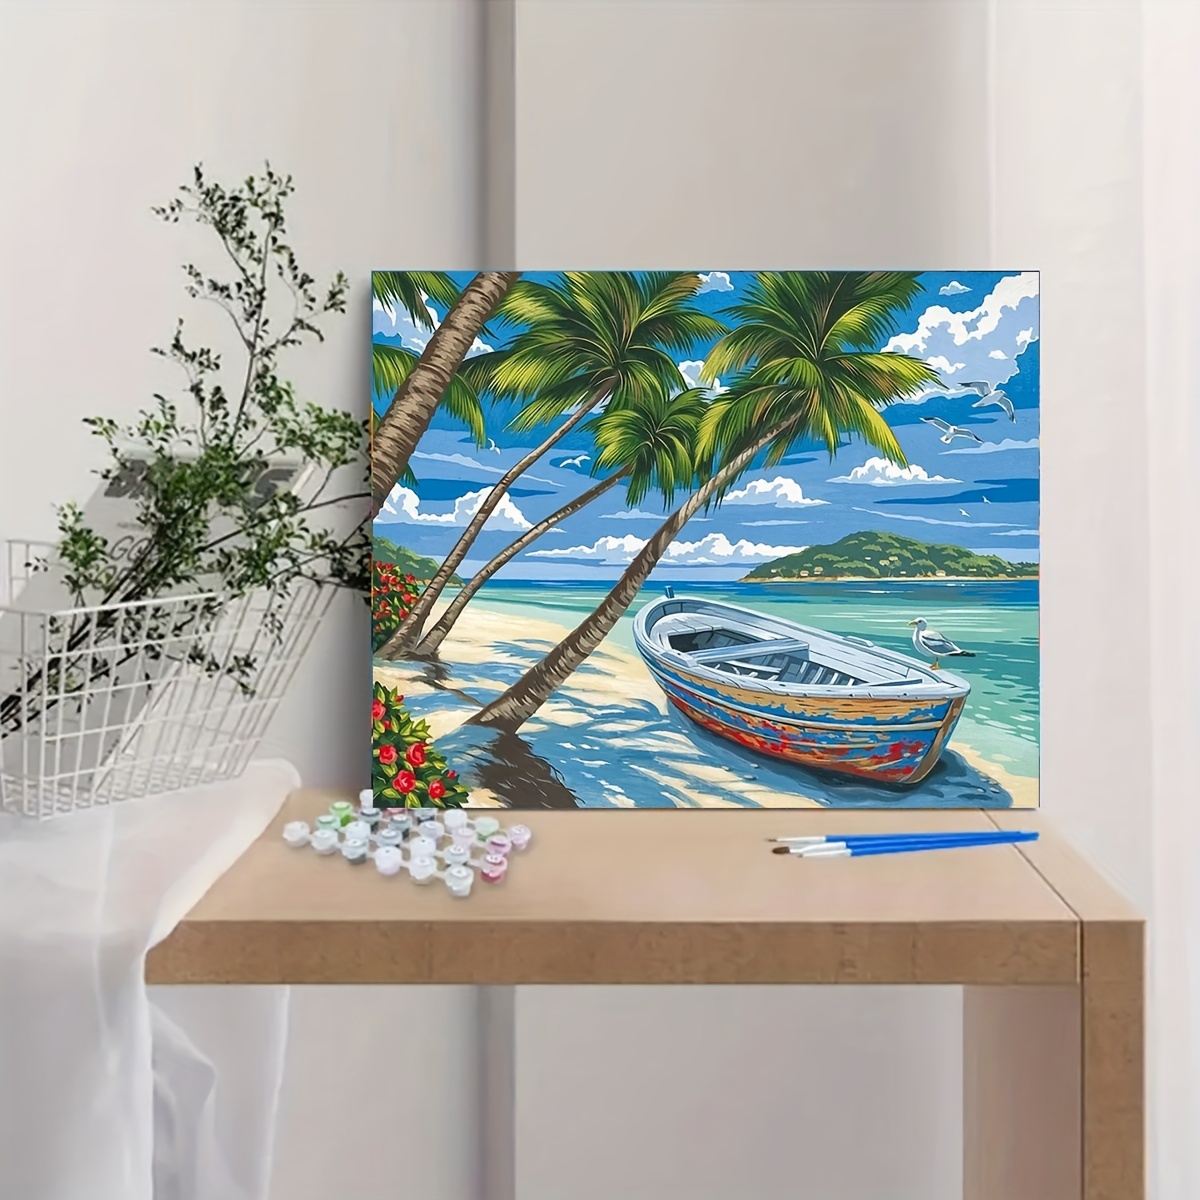 

Kit de peinture sur toile par numéros pour adultes – Paysage de bord de mer tropical avec bateau et palmiers – Projet artistique relaxant pour la décoration de la maison